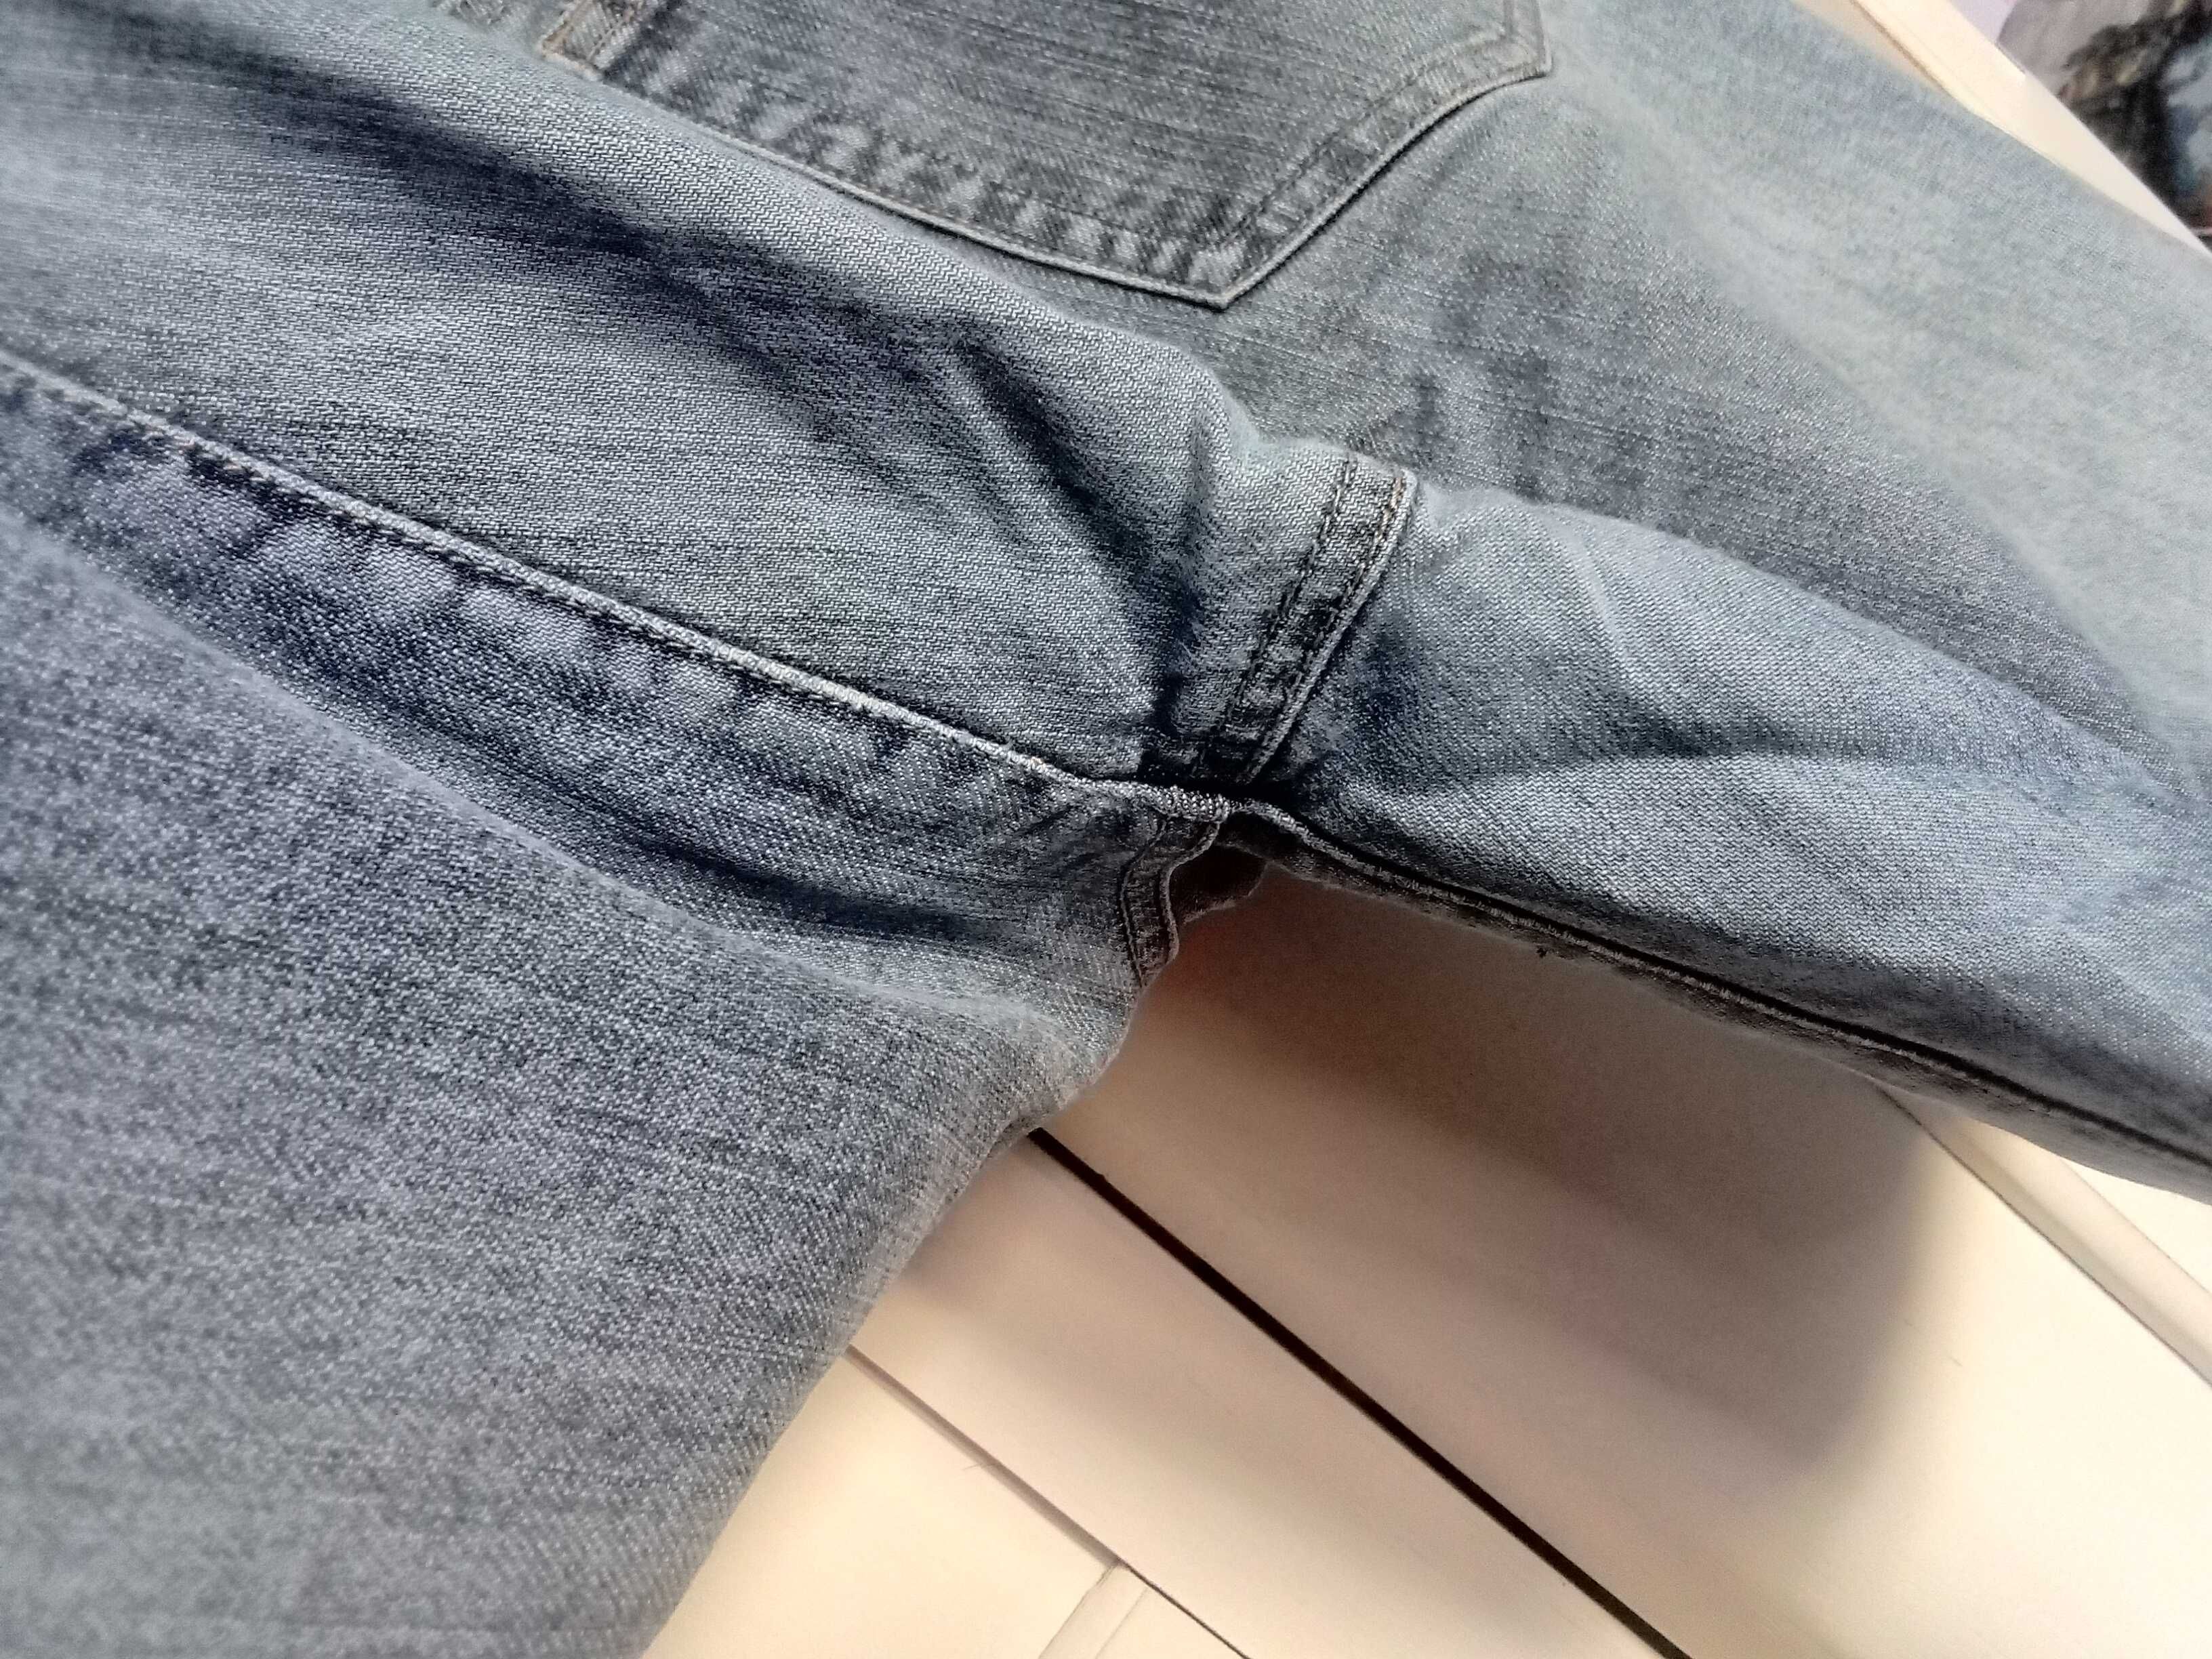 GRATIS Doroty Perkins jeansy szorty spodenki damskie dżinsowe 40